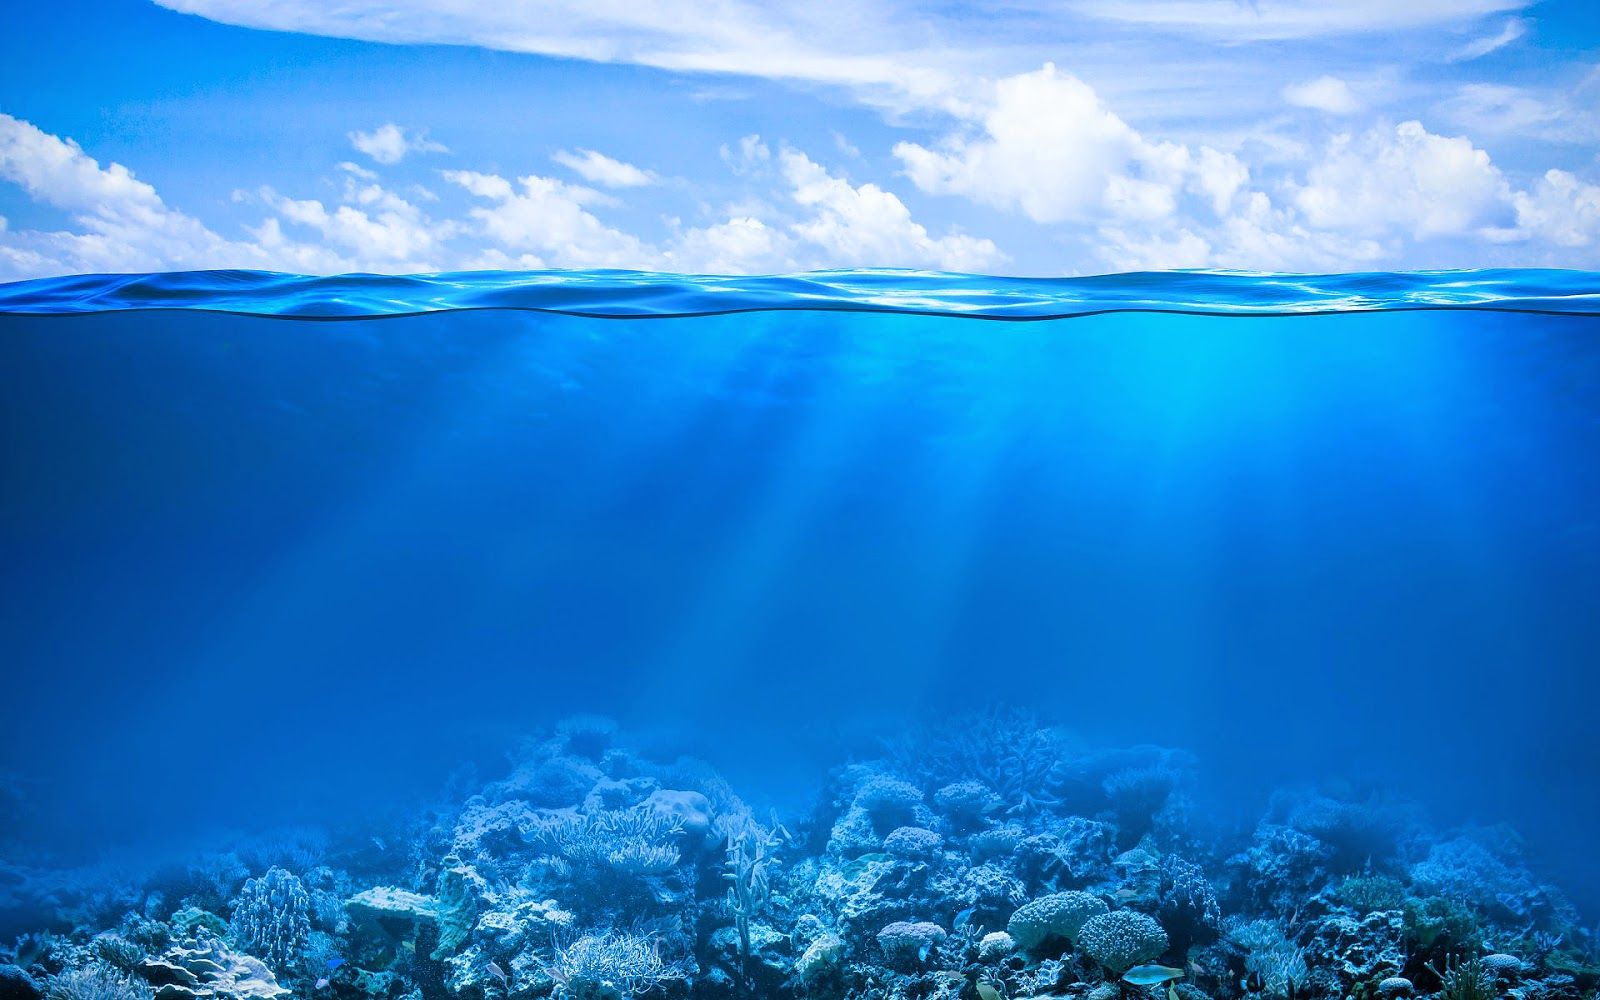  Blaue Hintergrundbild 1600x1000. Blauen Hintergrundbilder Mit Korallen Riff Unterwasserwelt Meer Fische Unterwasser Korallenriff Ozean Blauen Himmel Und Wolken